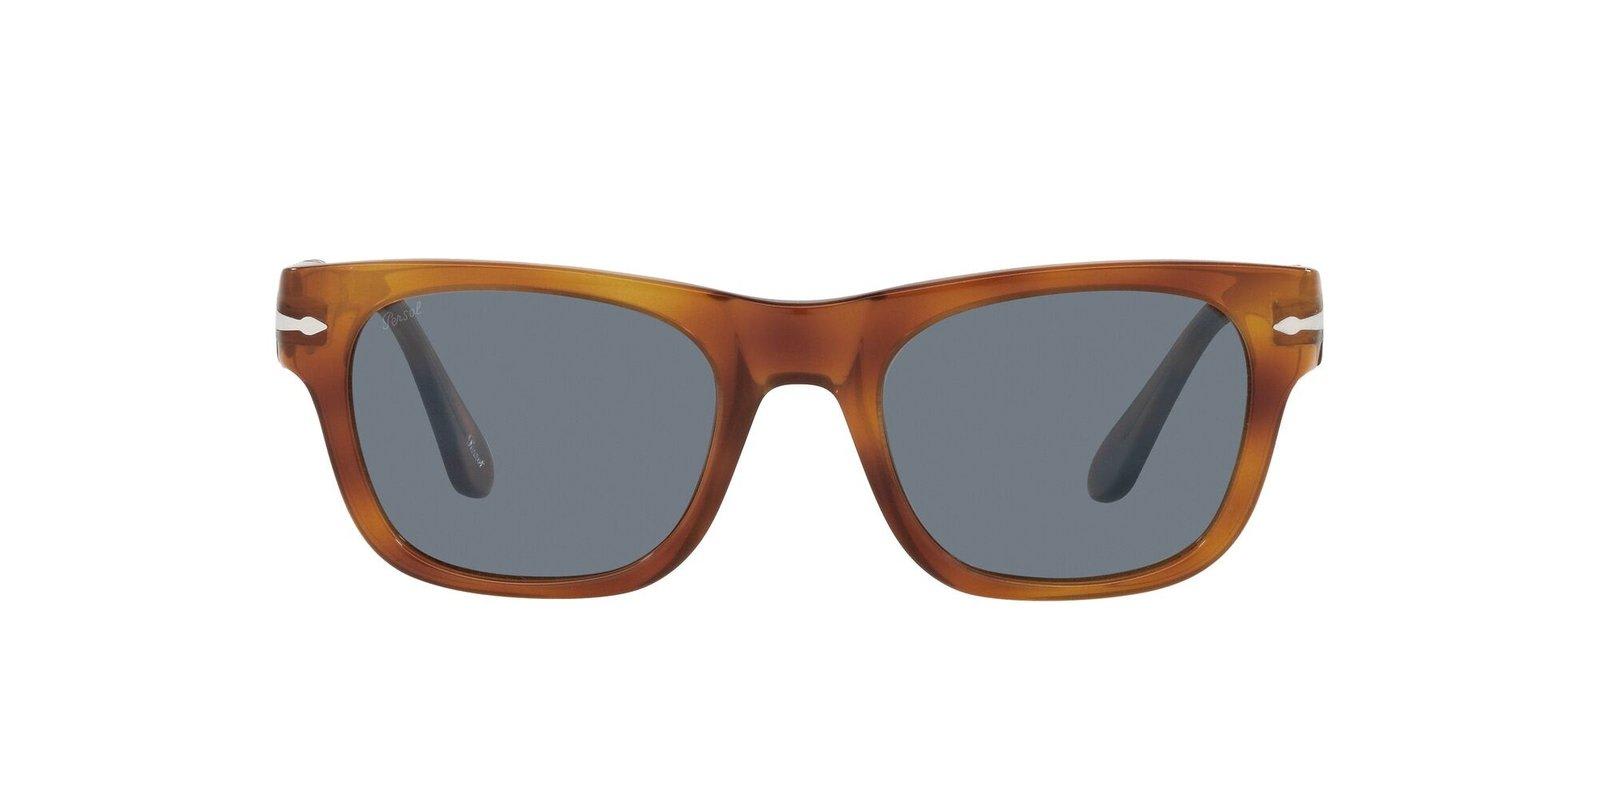 Persol Square Frame Sunglasses In Gray